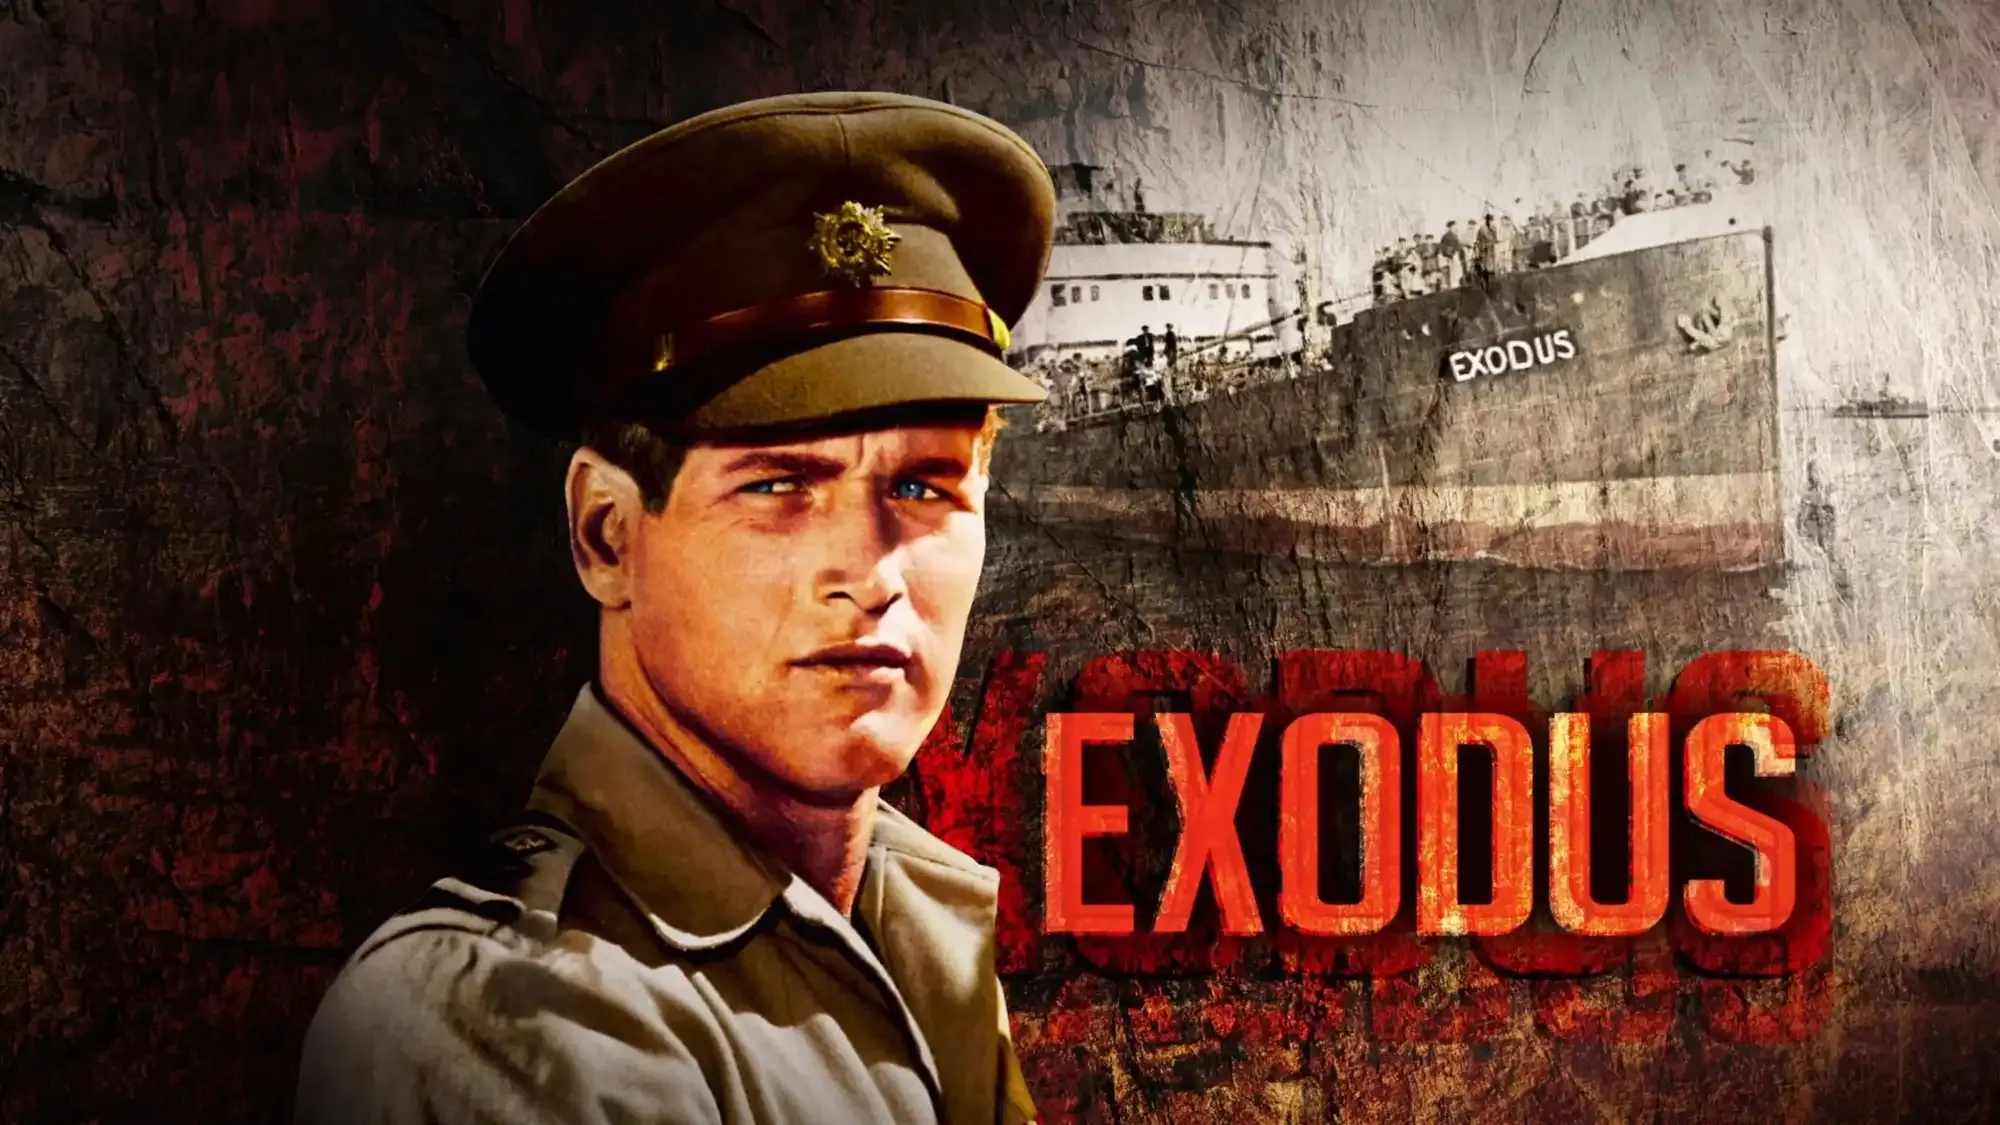 Exodus movie review